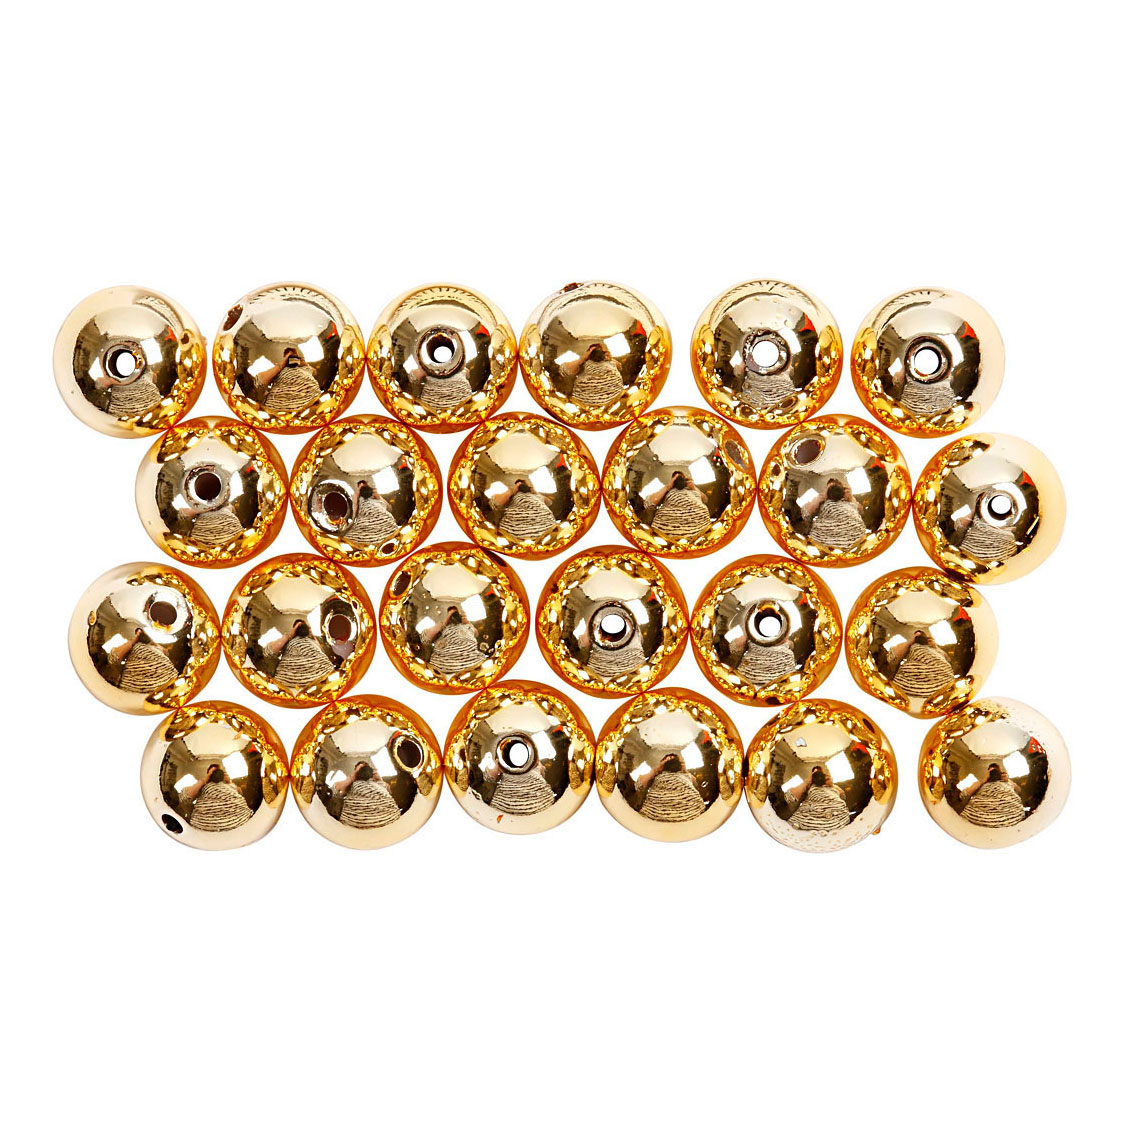 Perles dorées, 50 pièces.